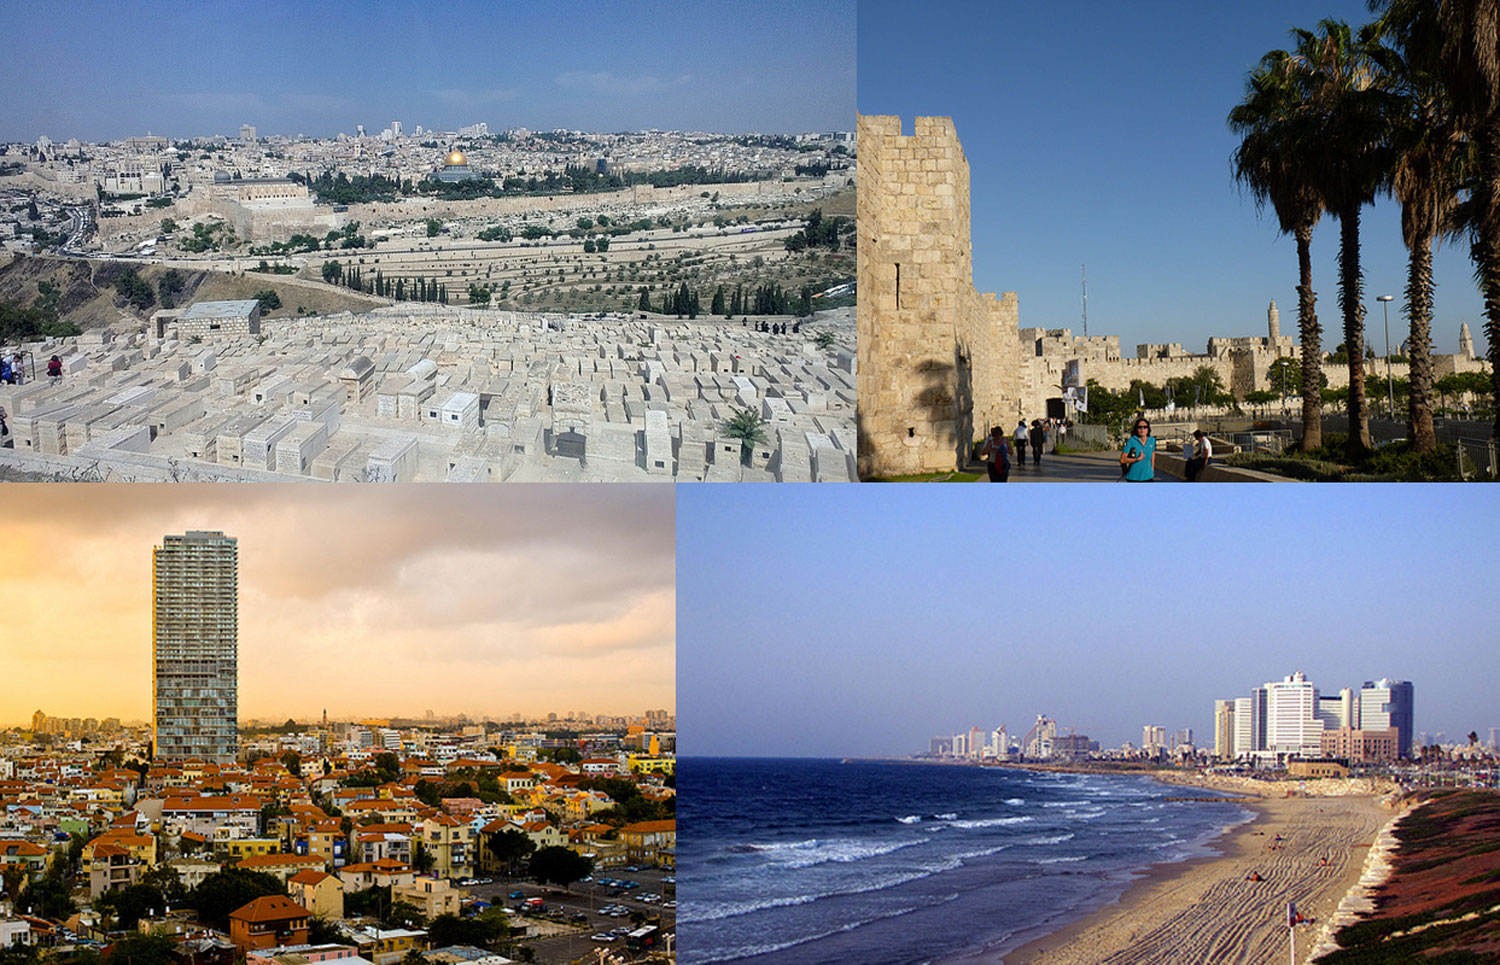 Fakta: Jerusalem och Tel Aviv är de två största städerna i Israel